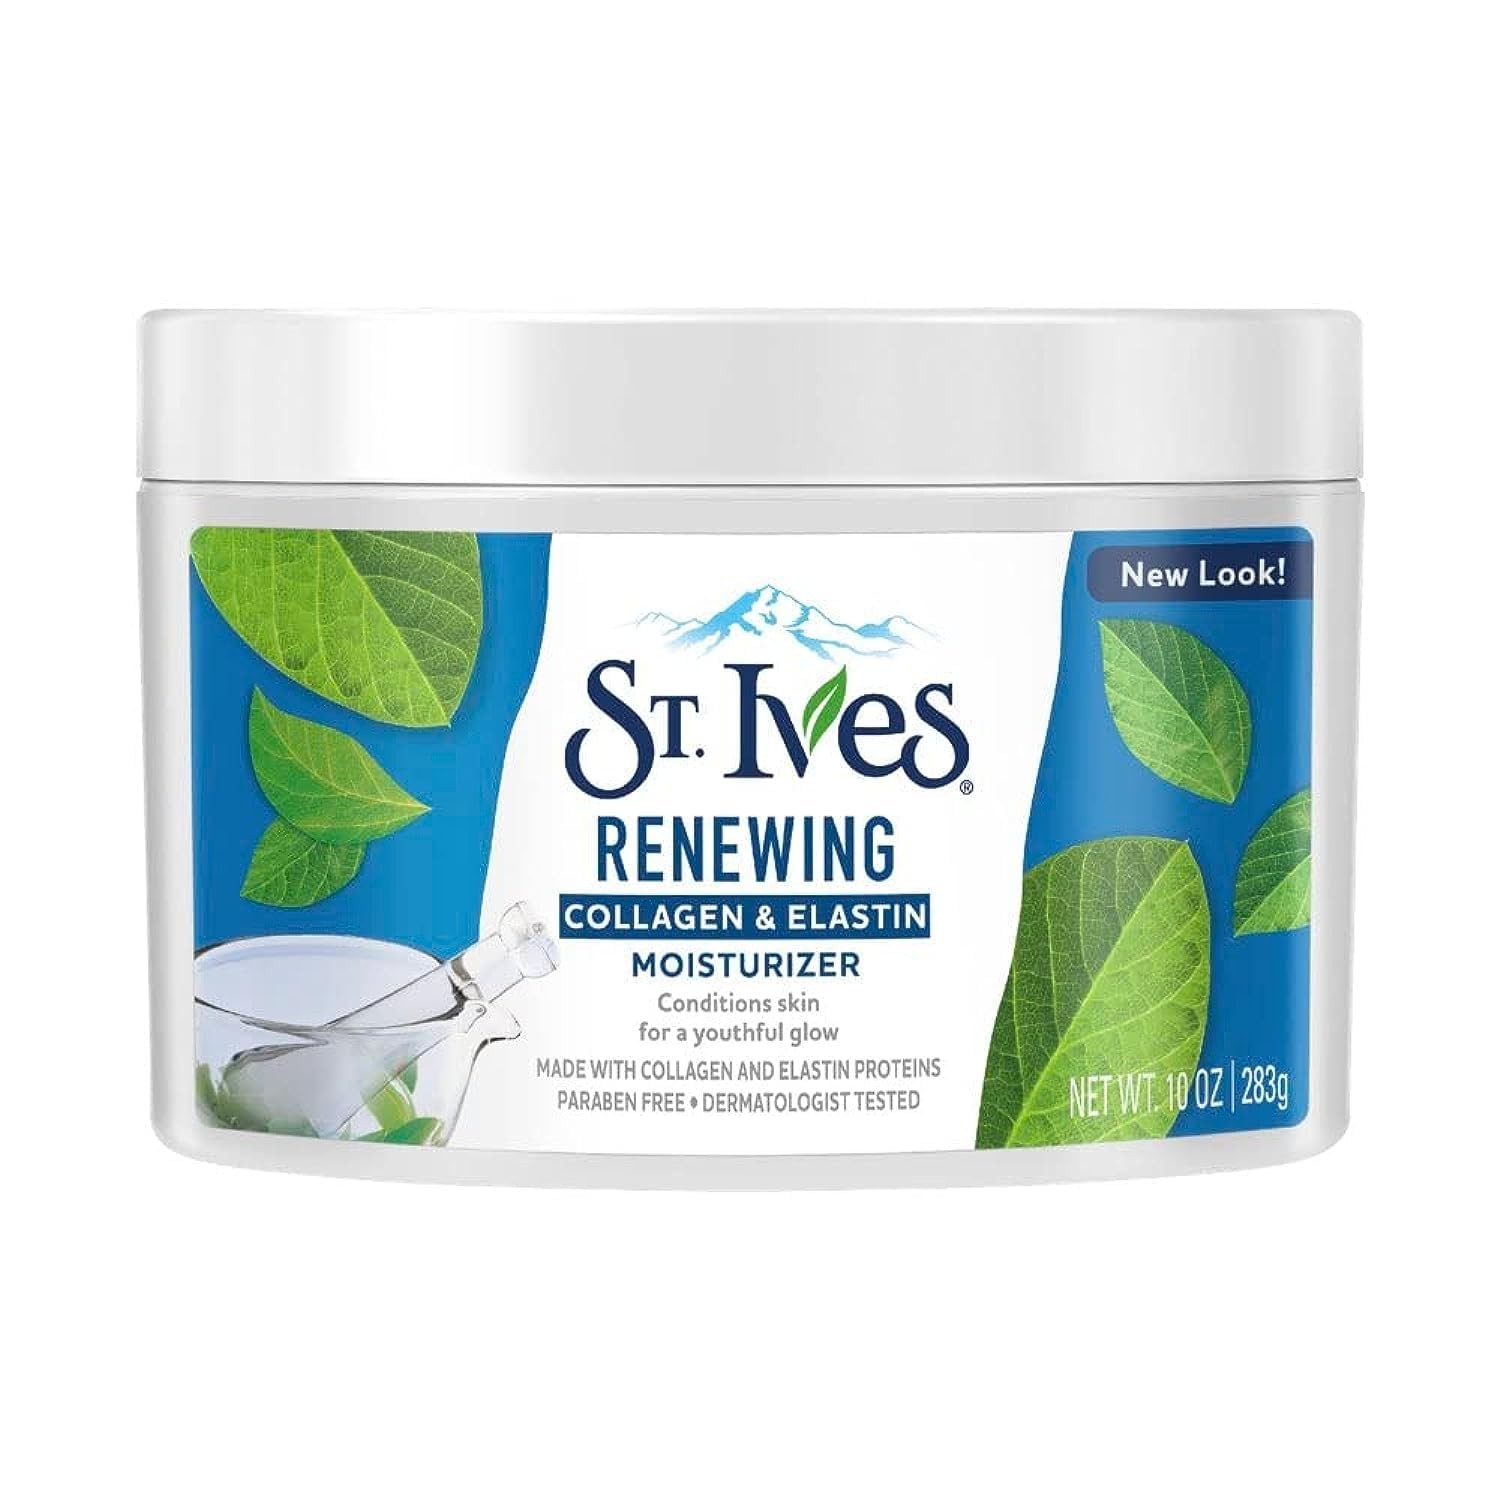 St. Ives Renewing Moisturizer Collagen & Elastin, 10oz